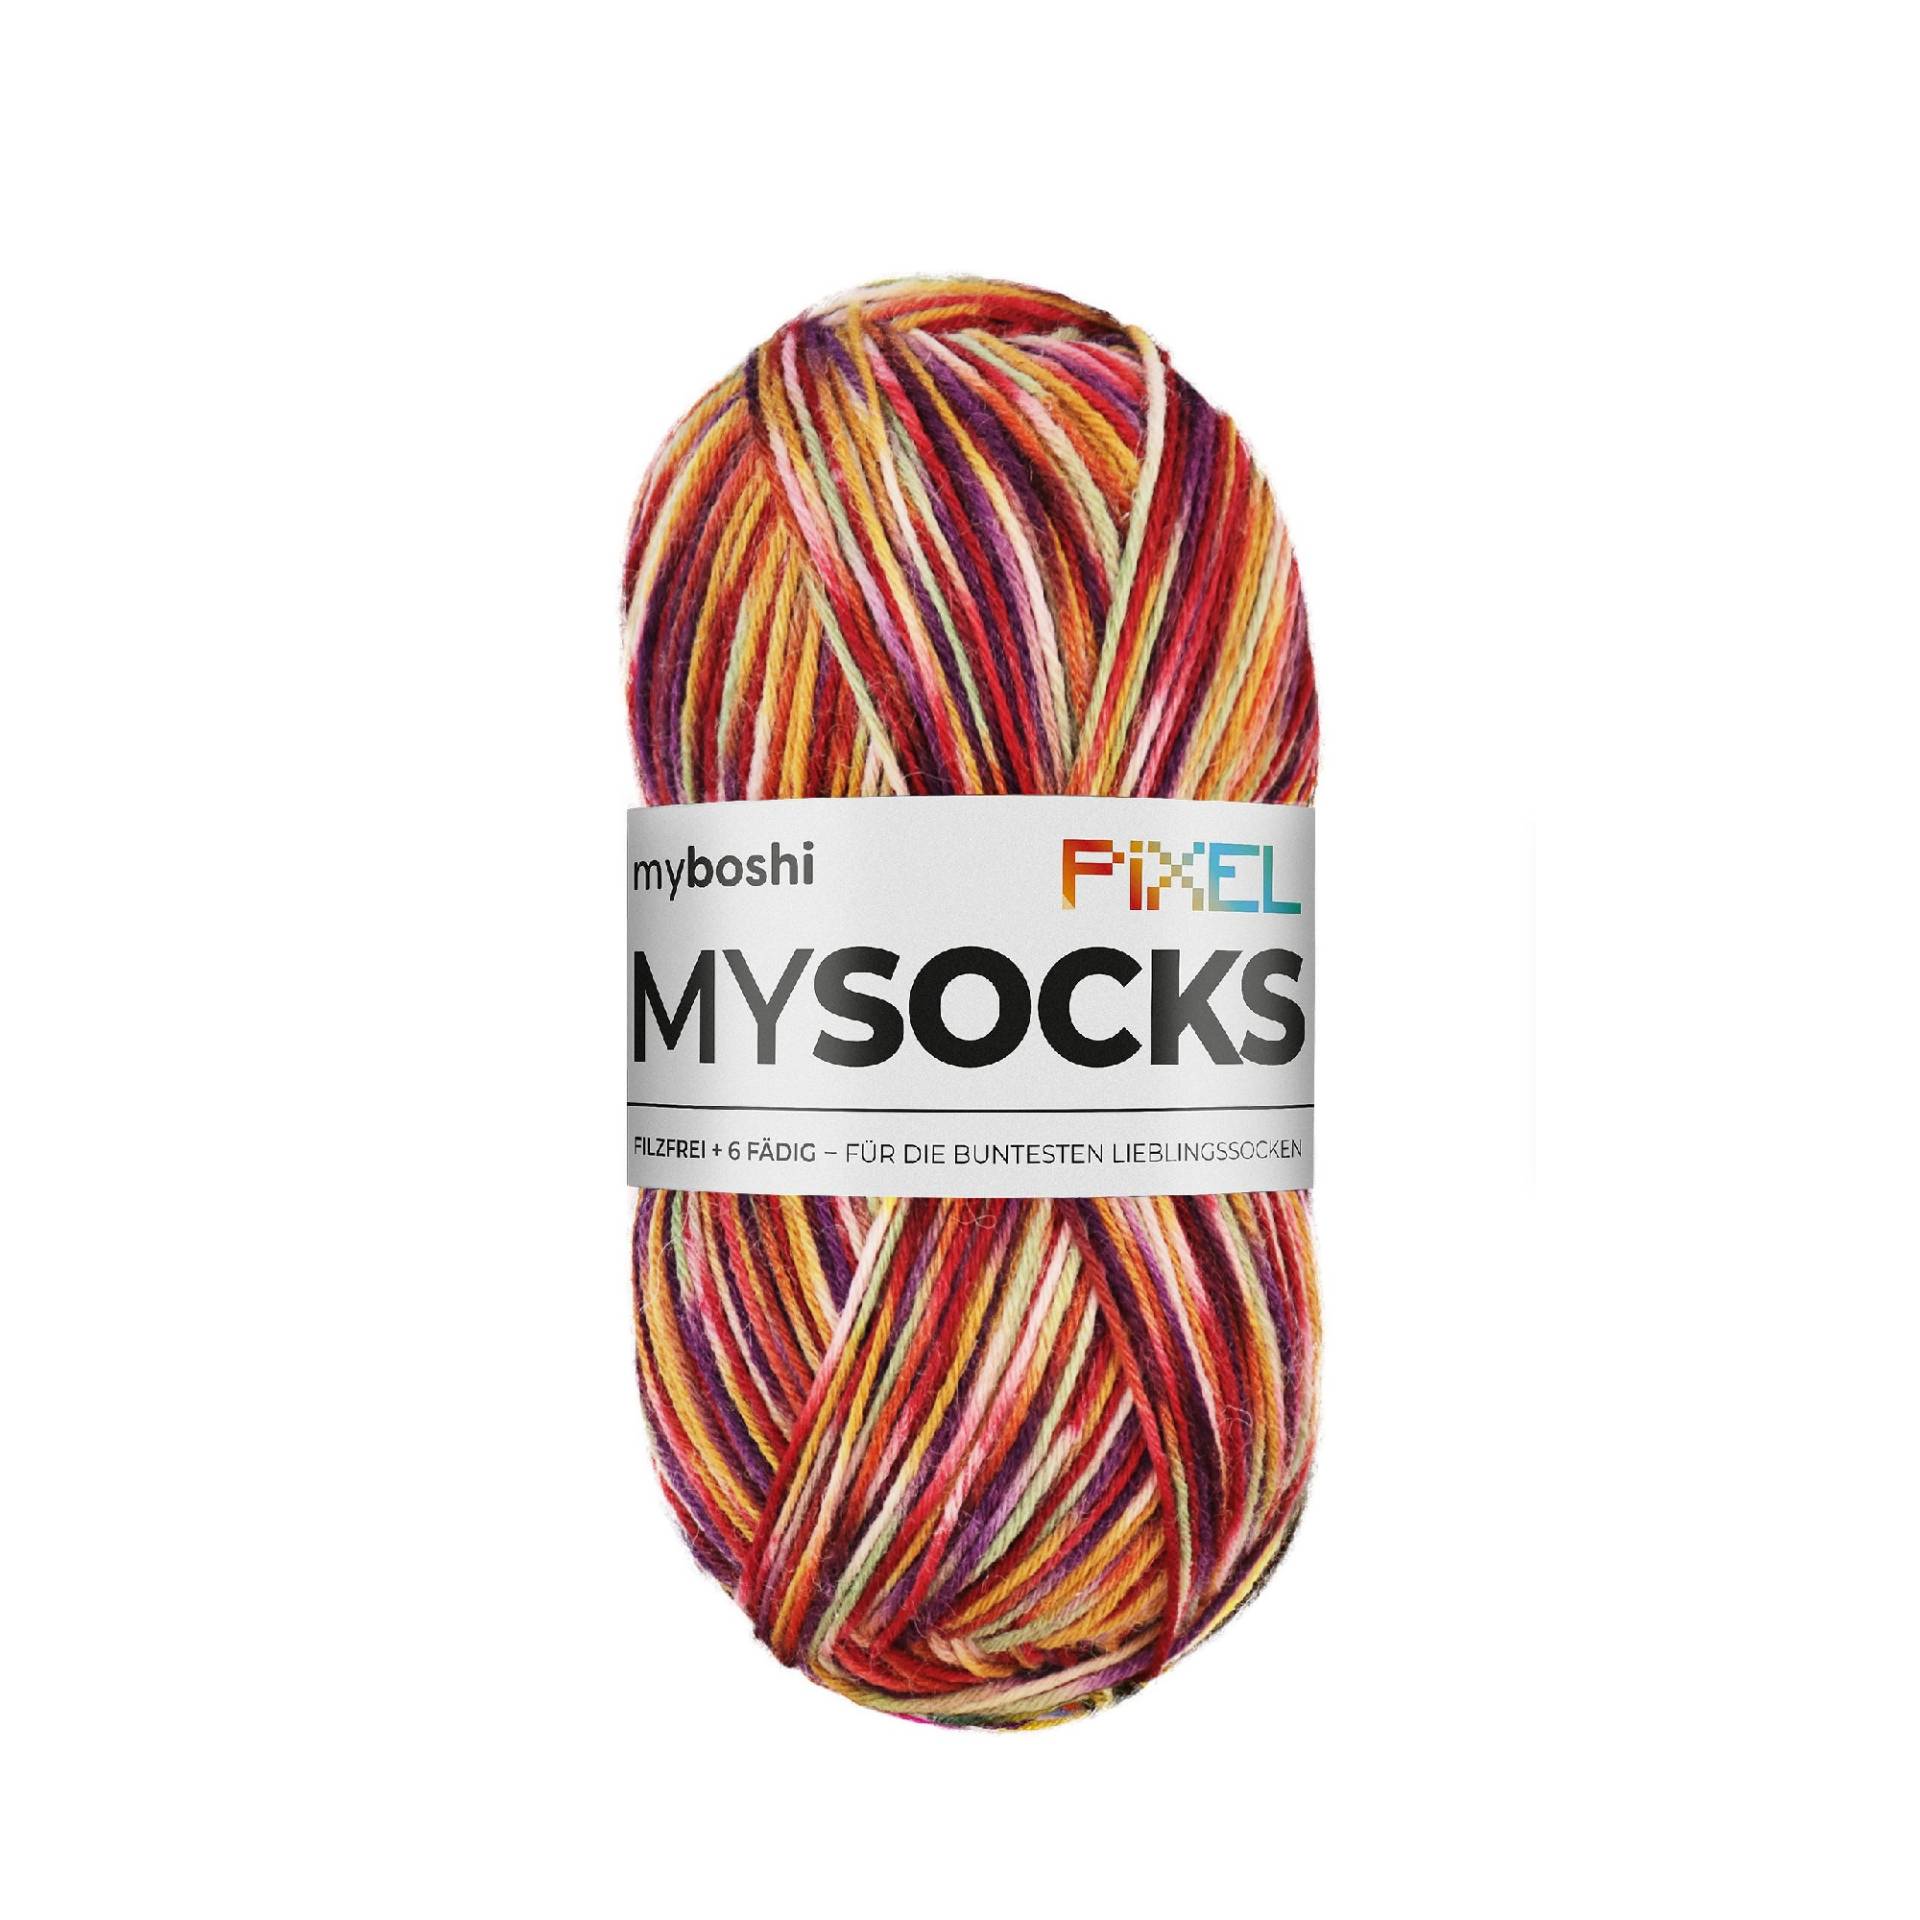 myboshi mysocks Pixel 6-fädige Sockenwolle Nesu 150g, rot-orange von Stoffe Hemmers